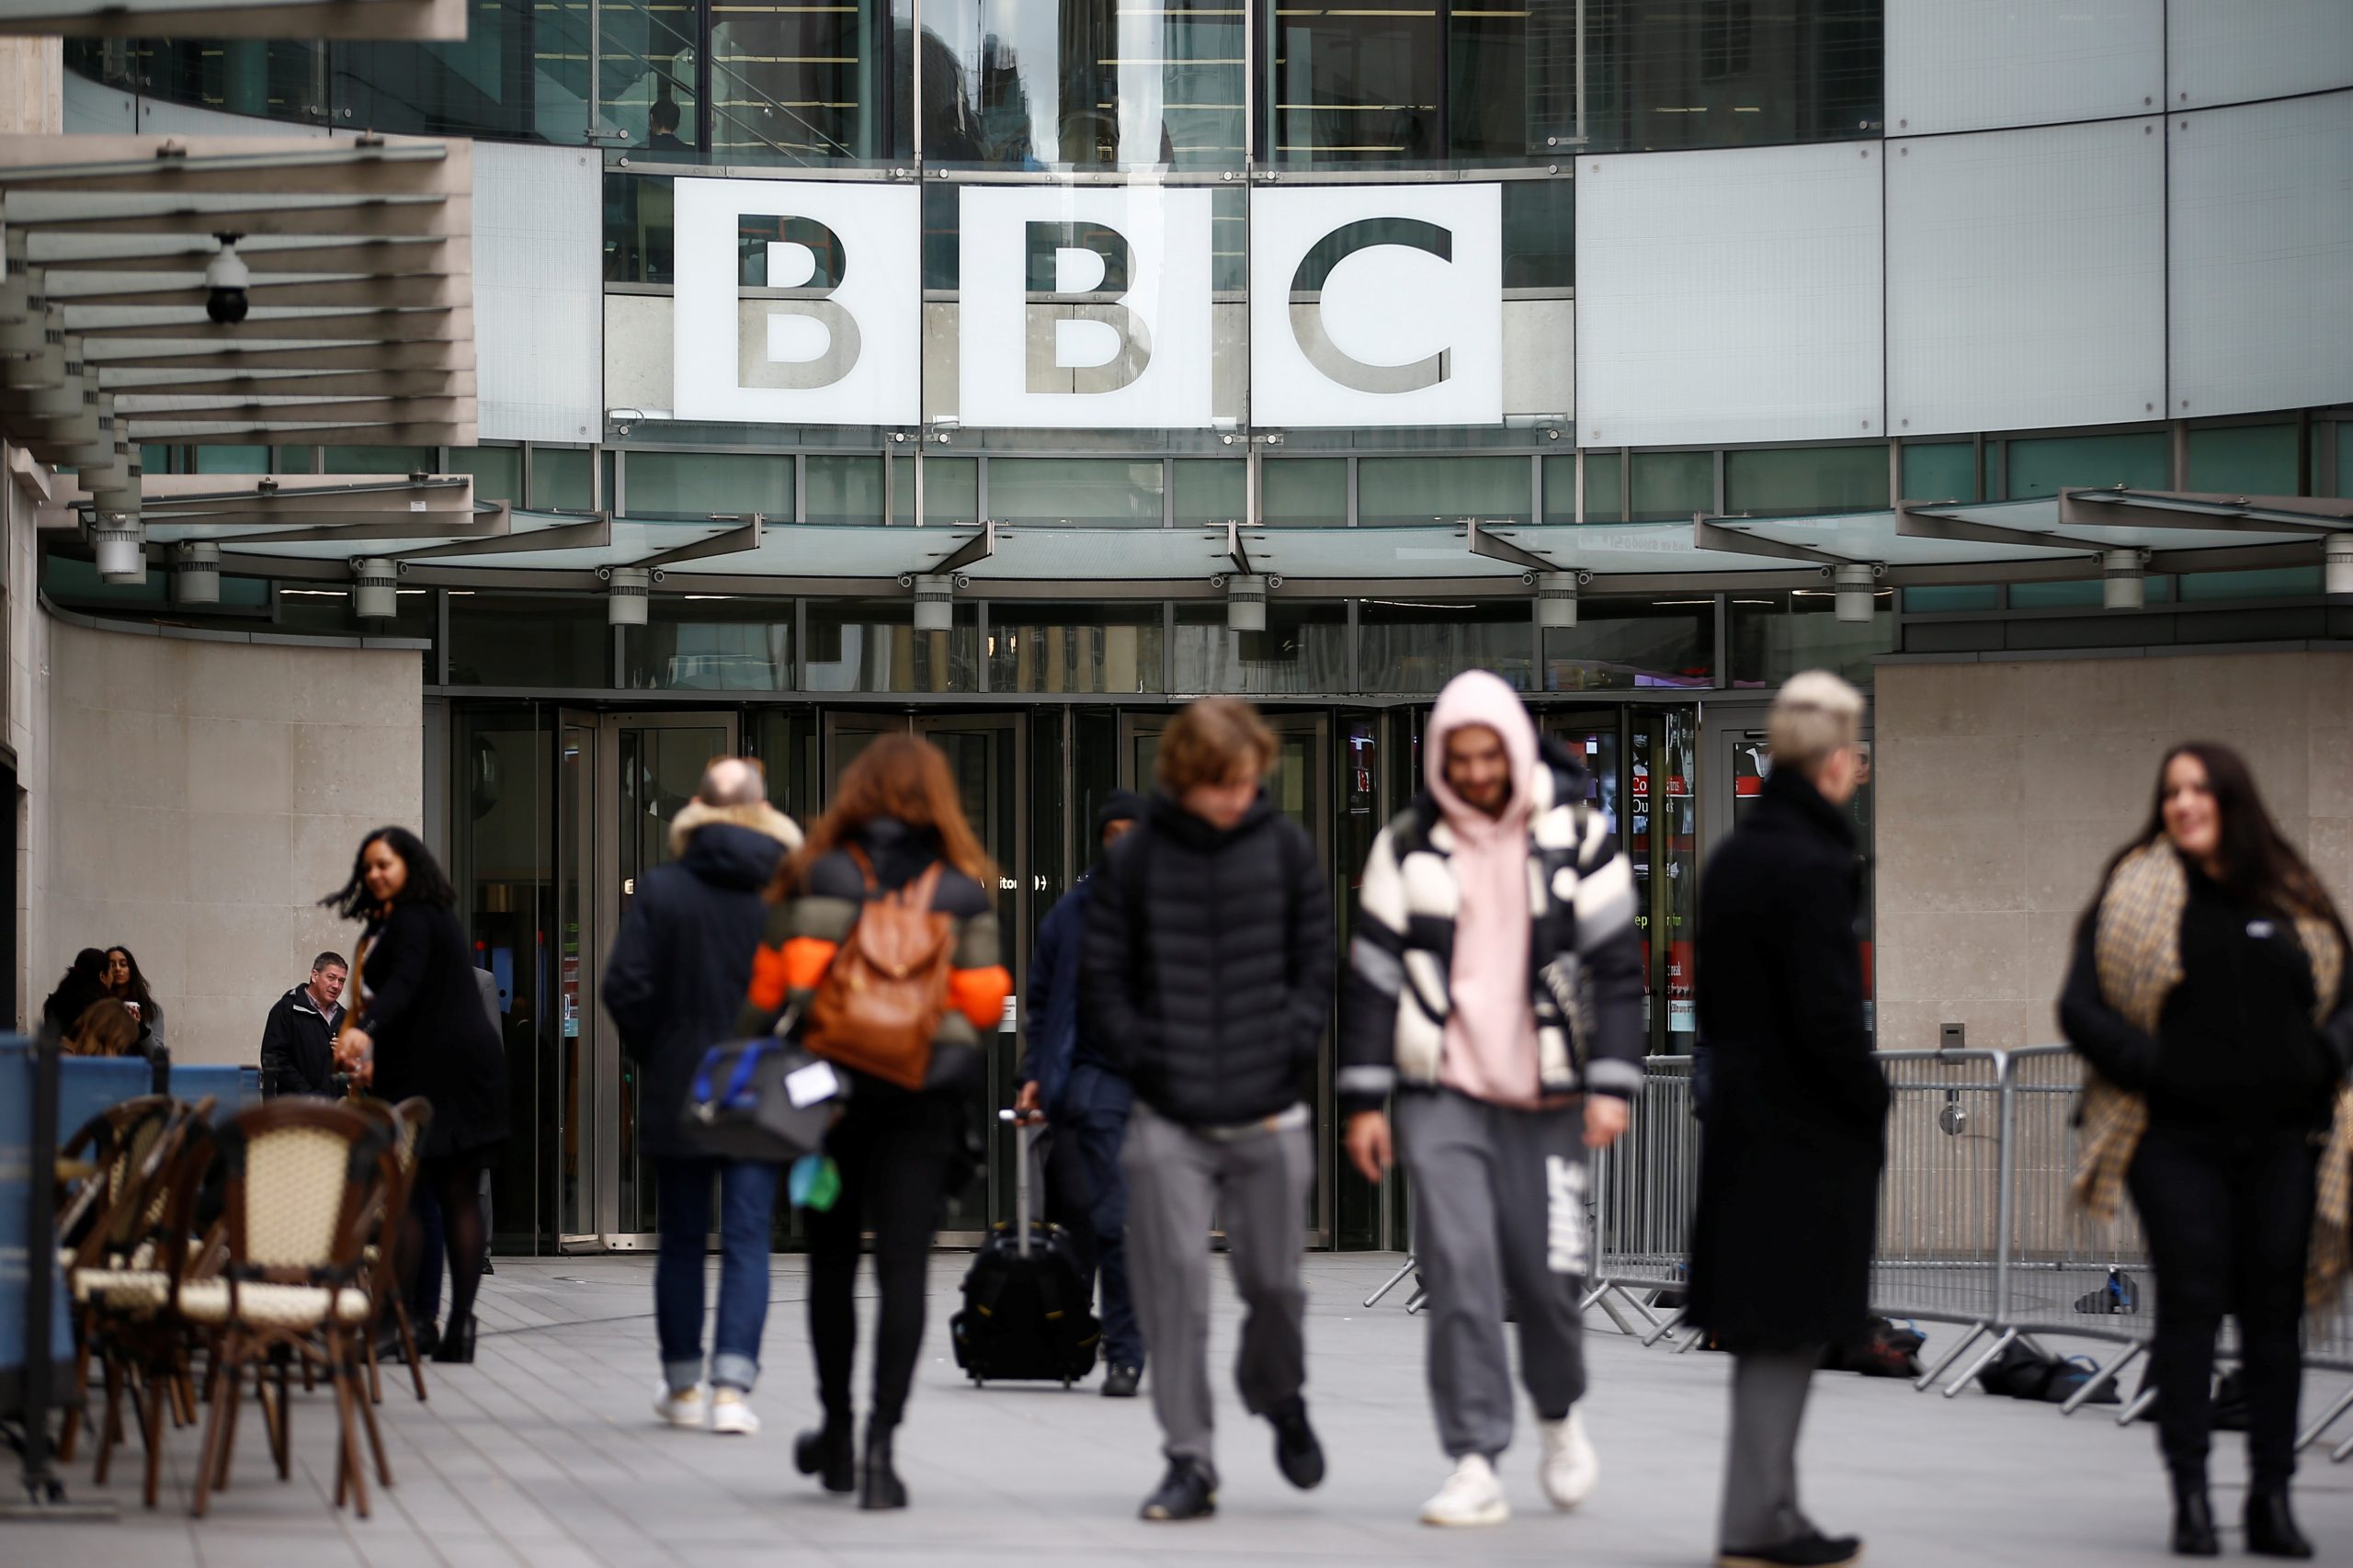 BBC verliert weiter zahlende Kunden.